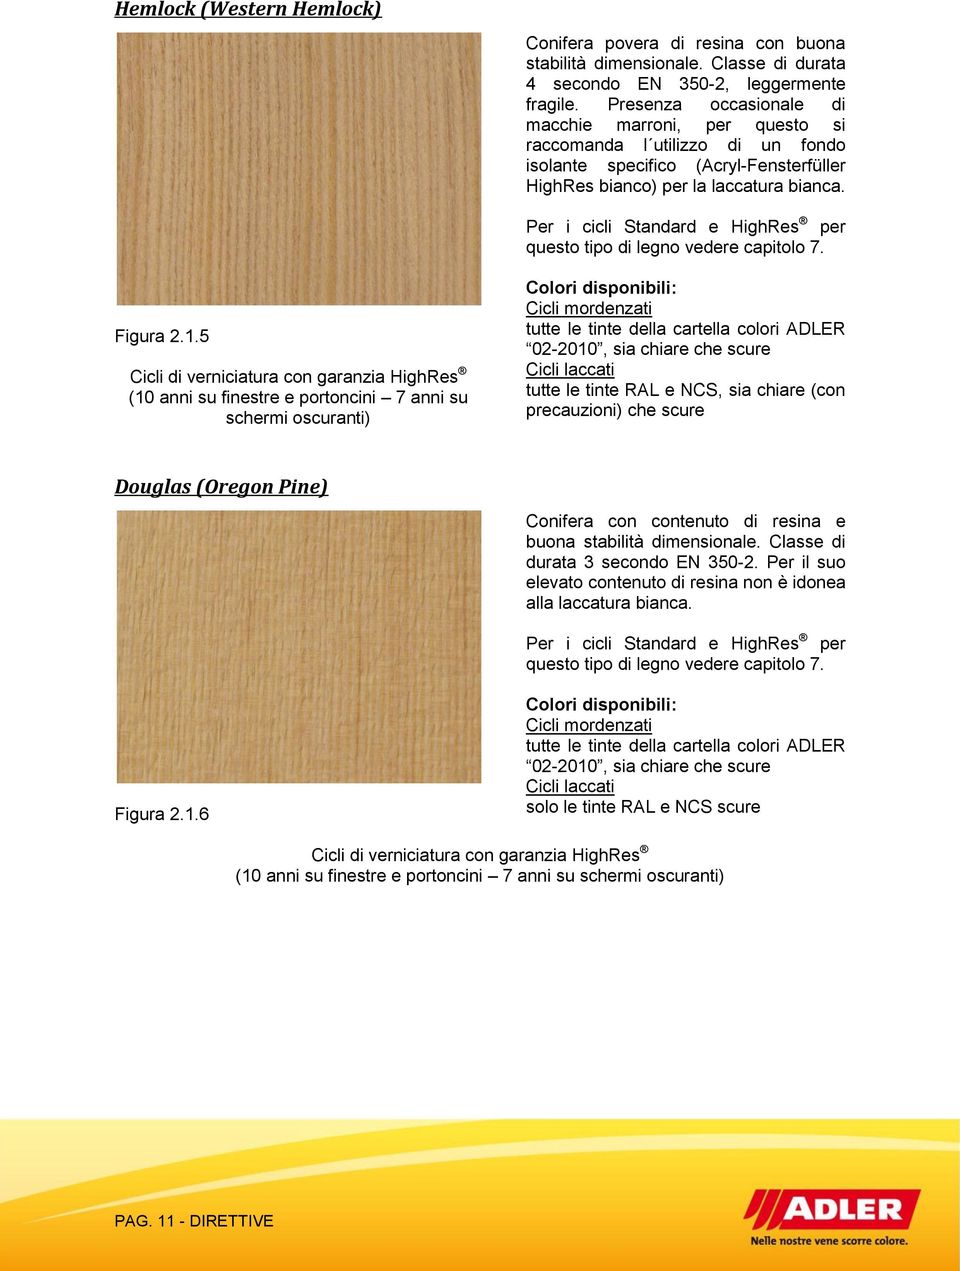 Per i cicli Standard e HighRes per questo tipo di legno vedere capitolo 7. Figura 2.1.